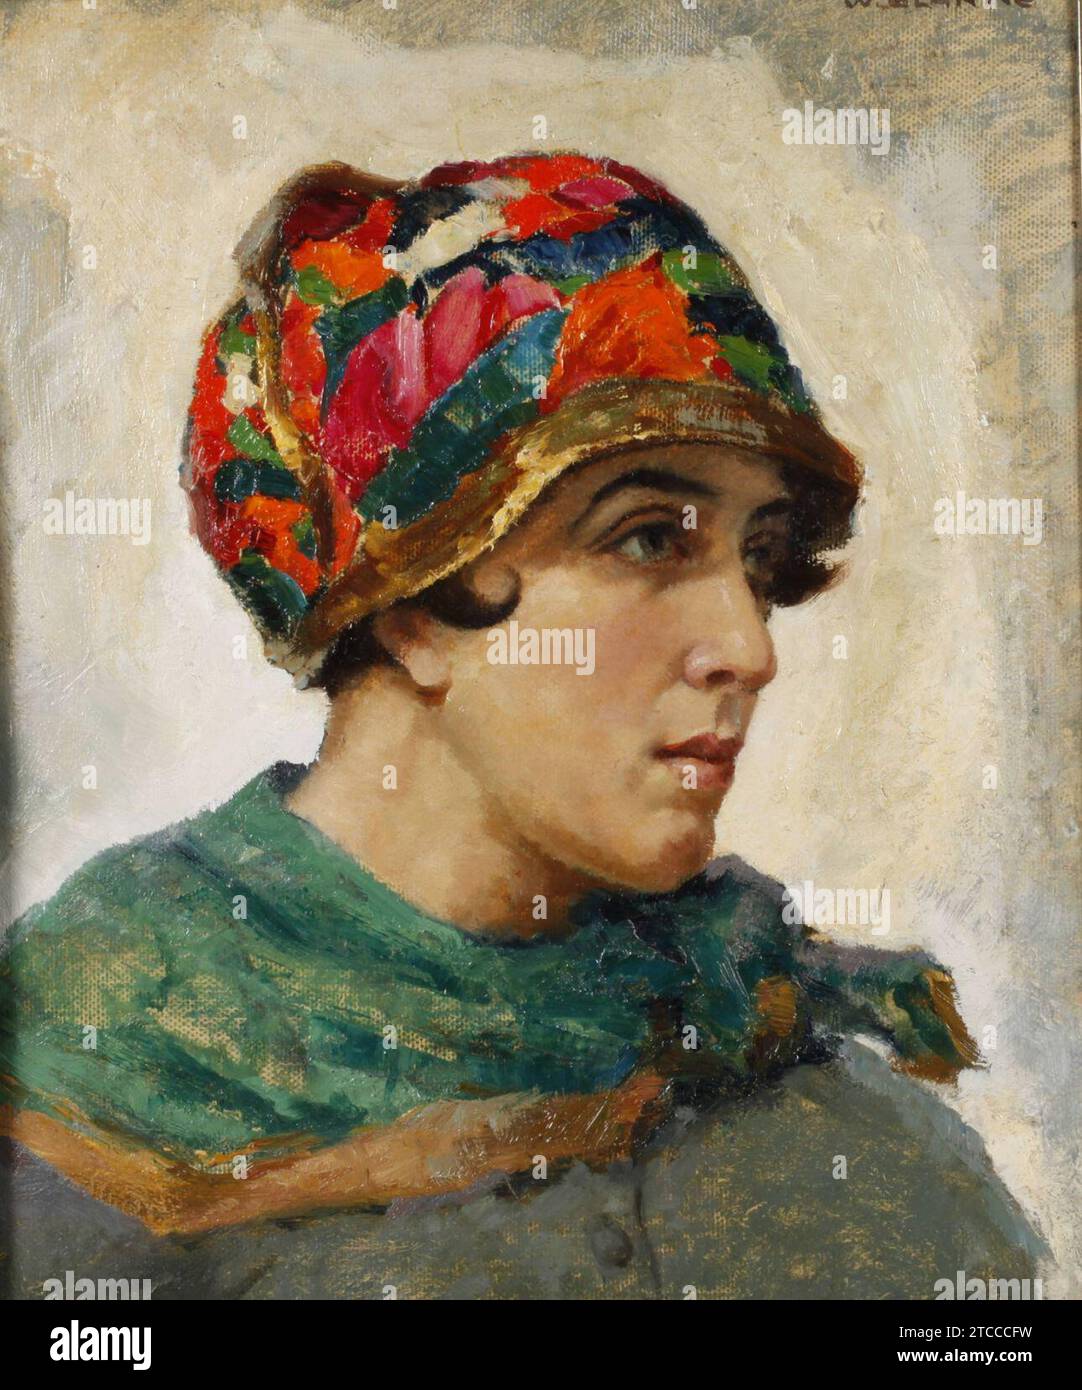 Wilhelm Blanke - Junge Frau mit Art déco-Kopfbedeckung. Stock Photo